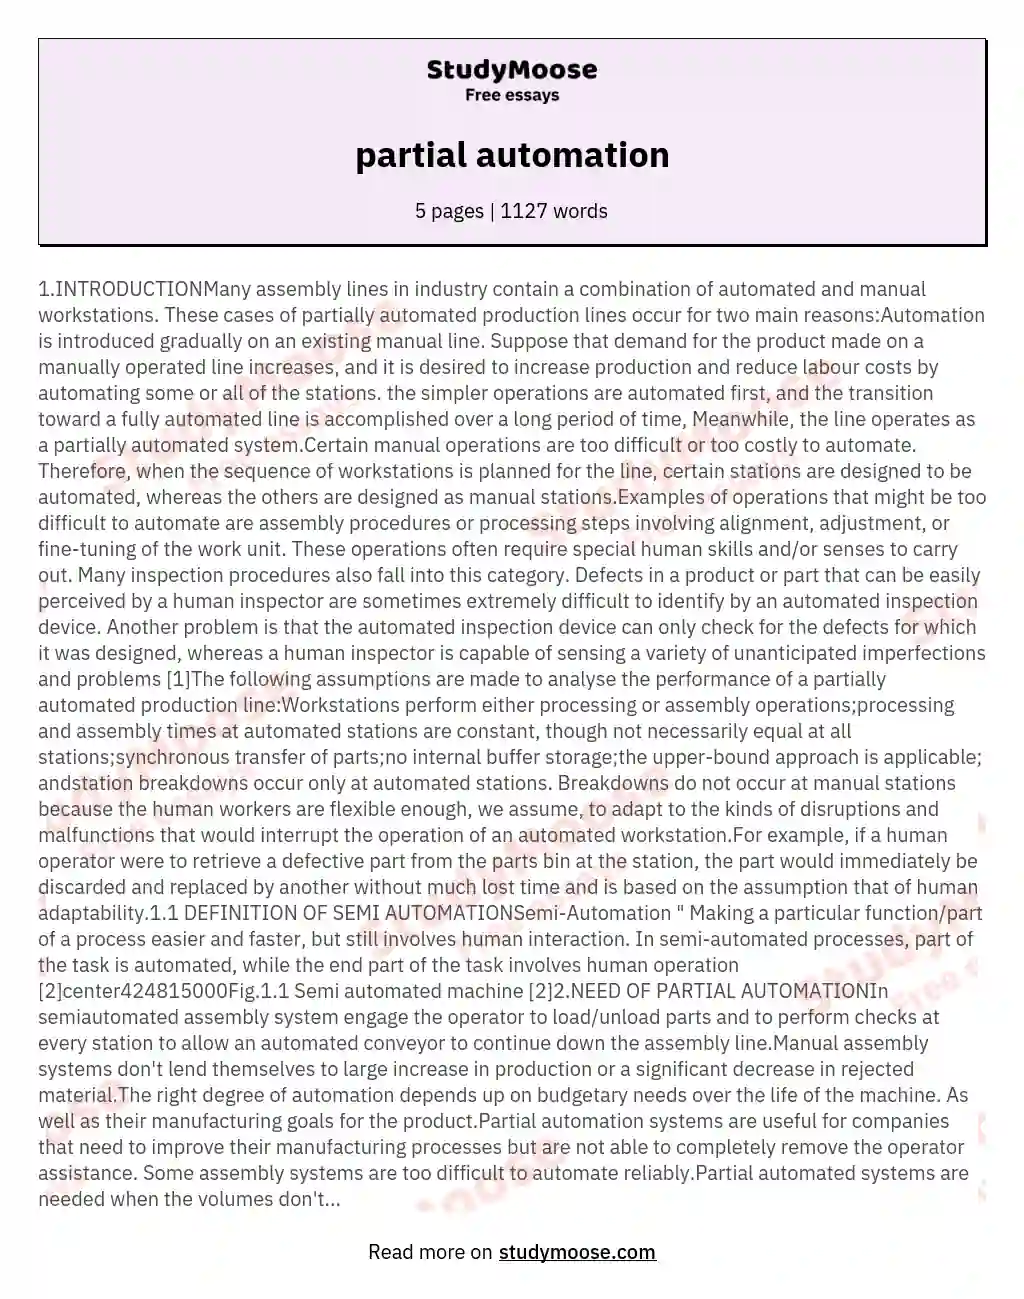 partial automation essay